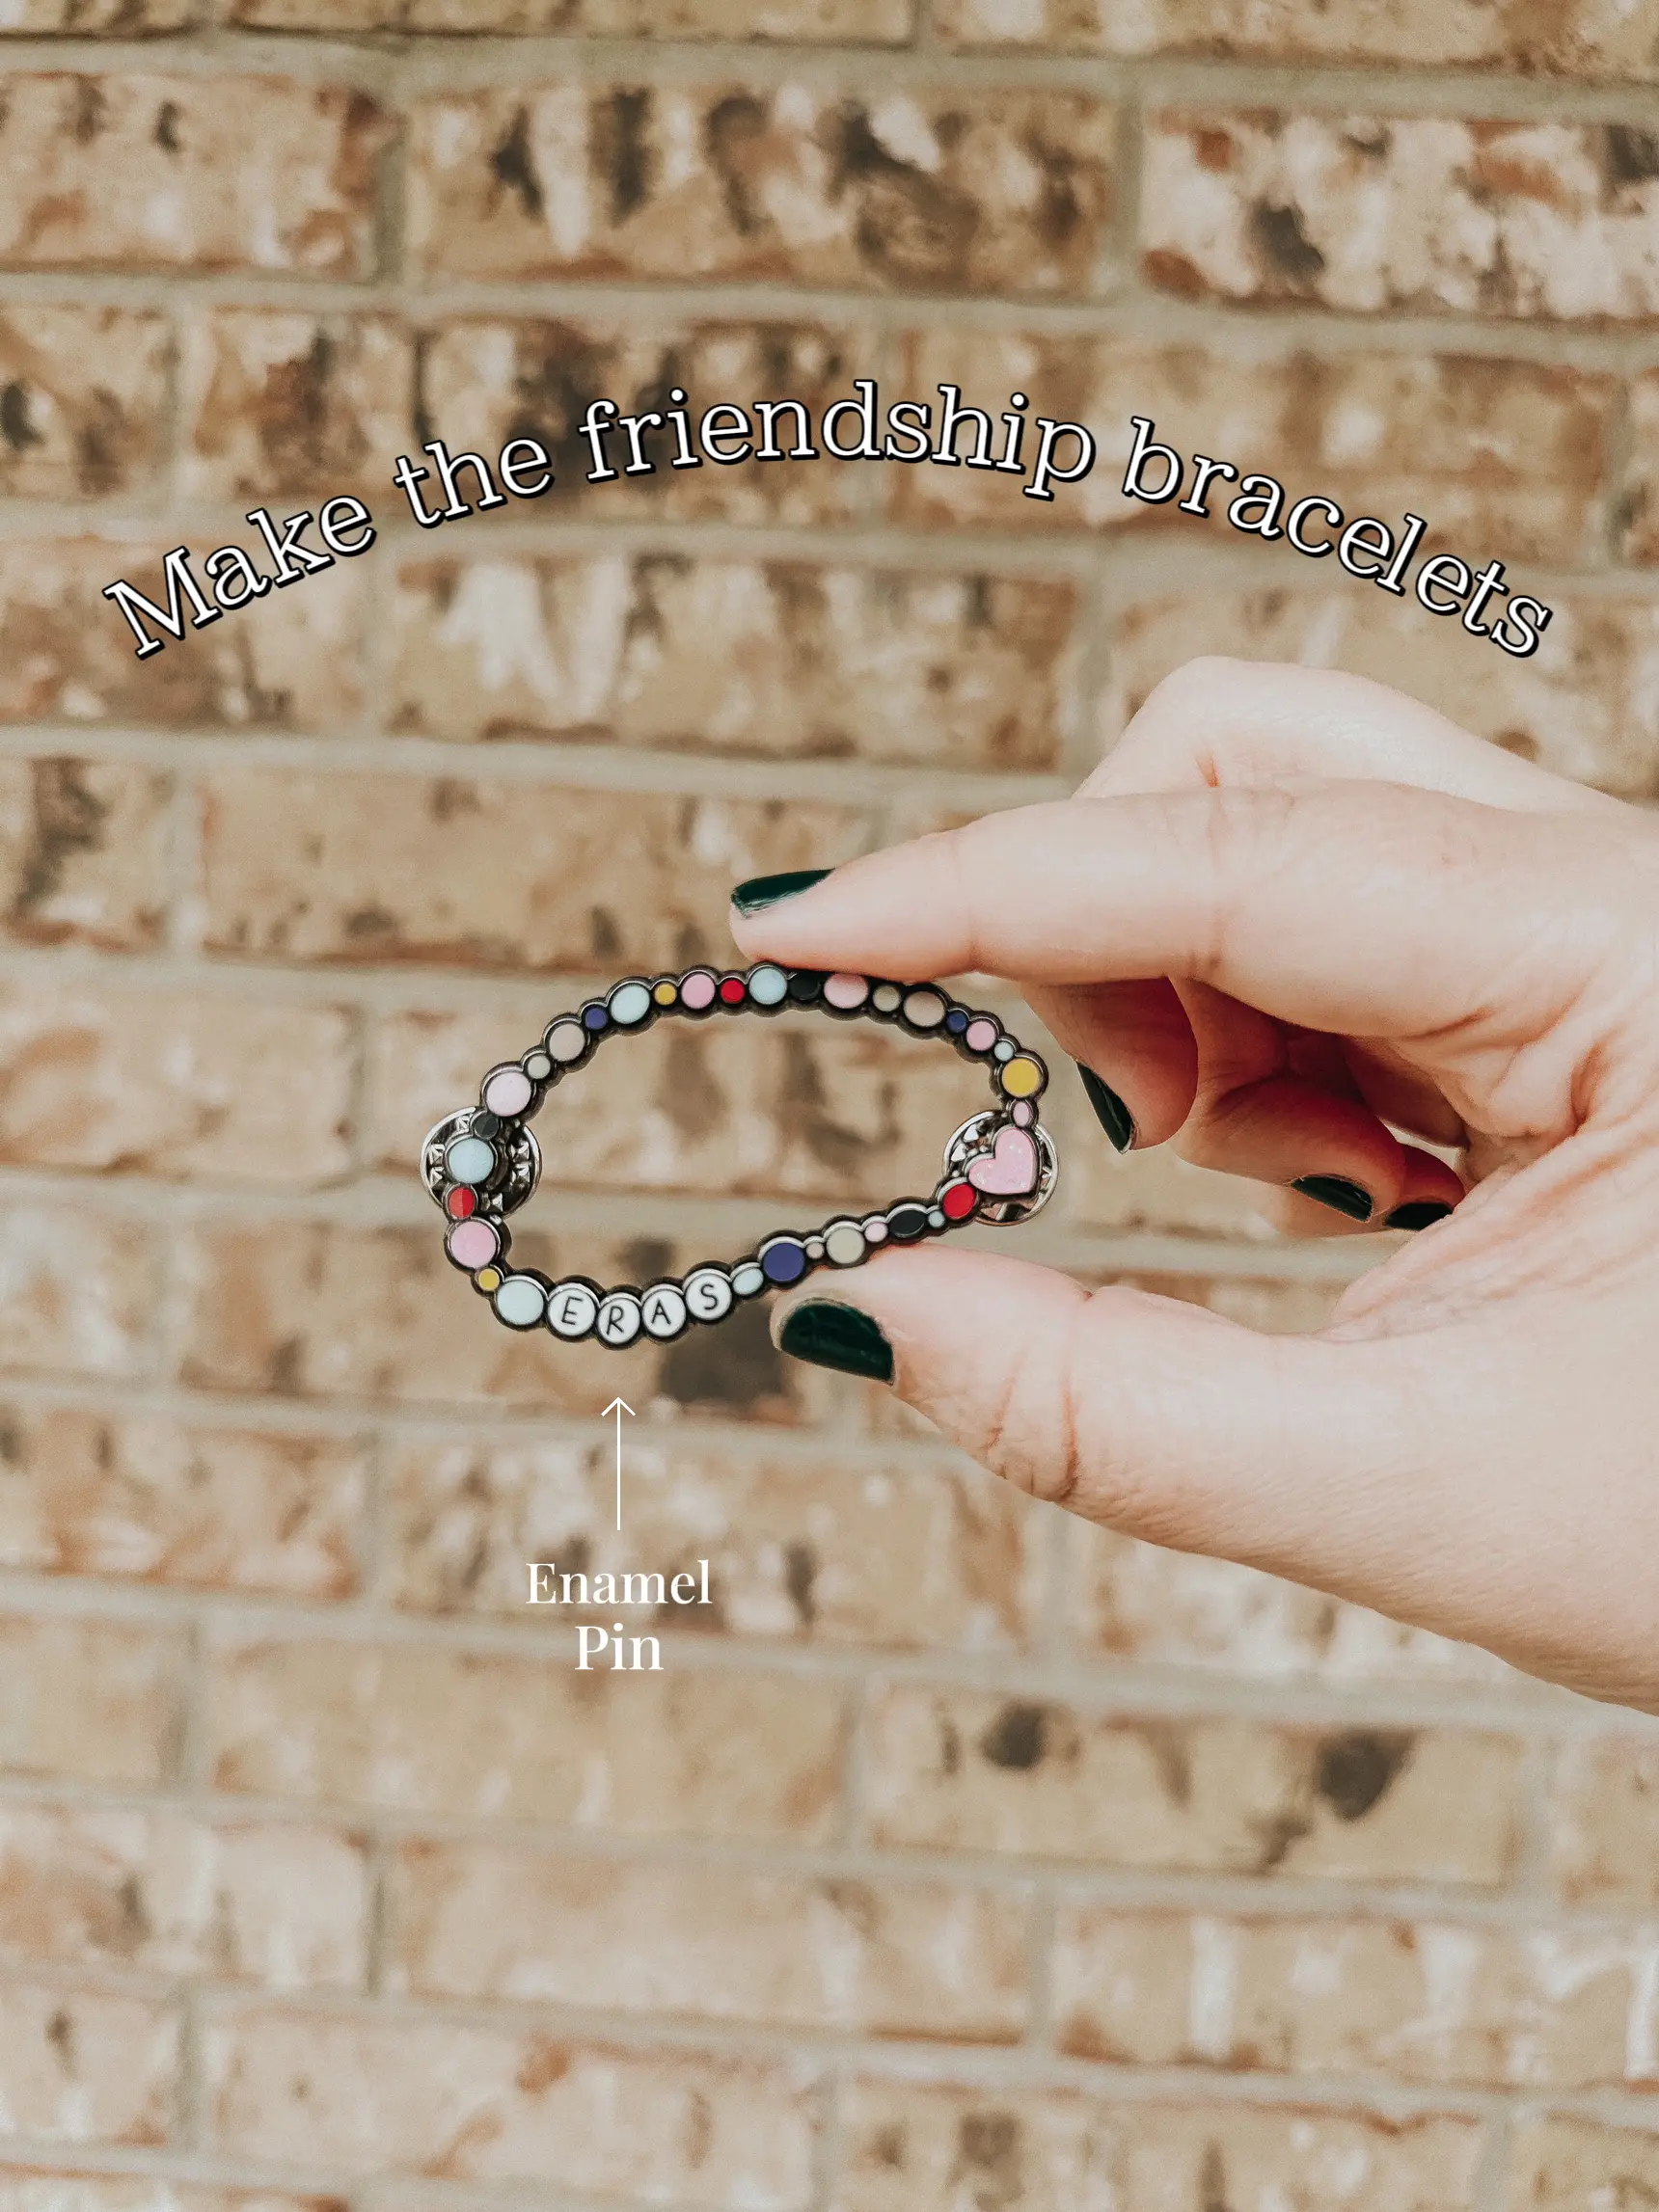 Pin on Friendship Bracelets